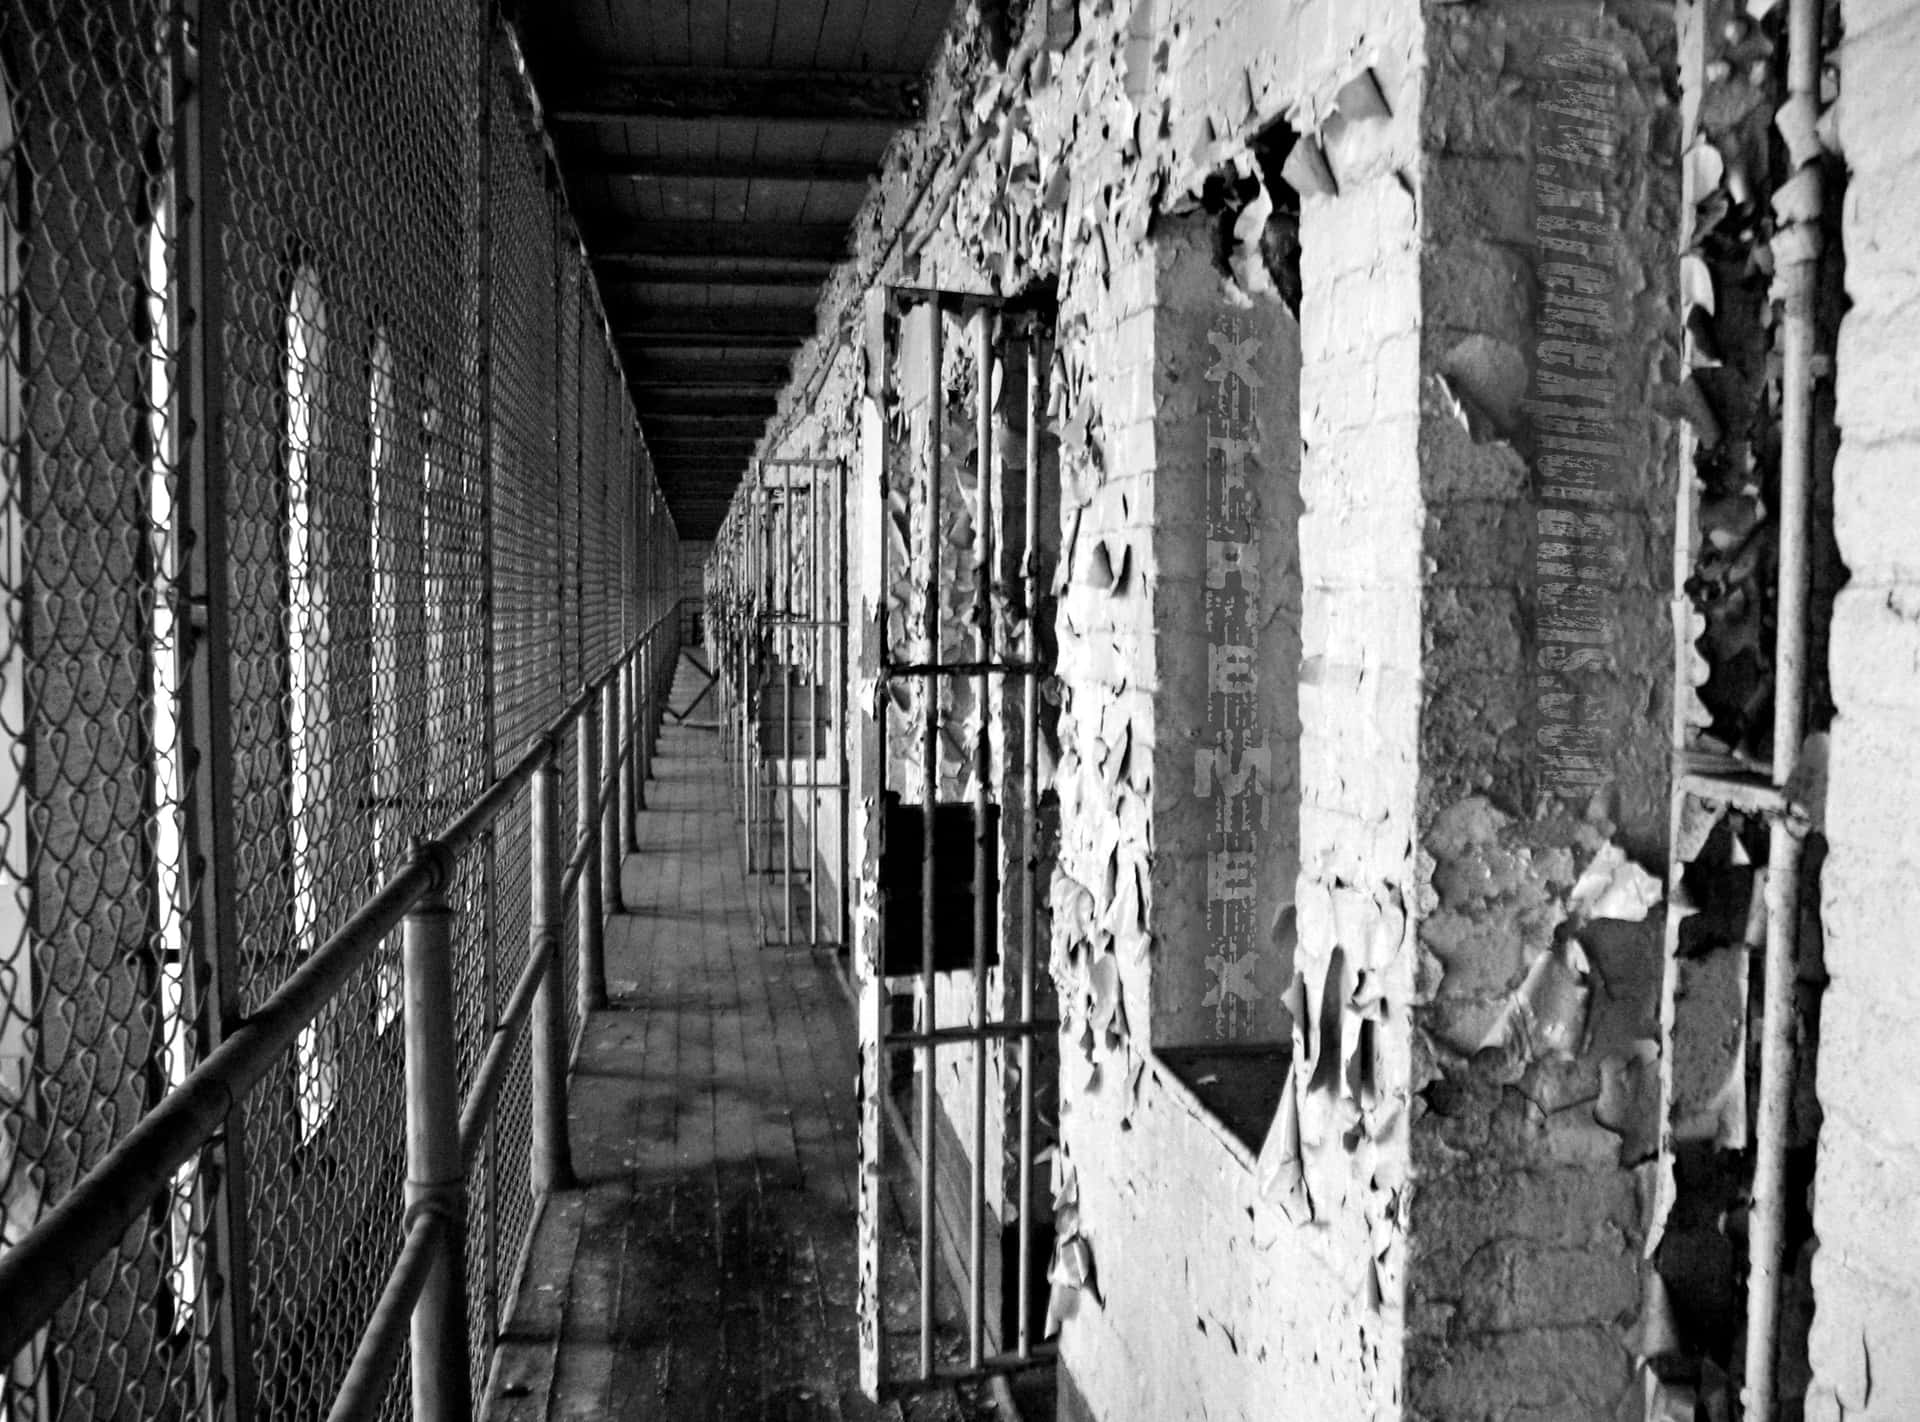 Etsort-hvidt Foto Af En Gammel Fængselscelle.